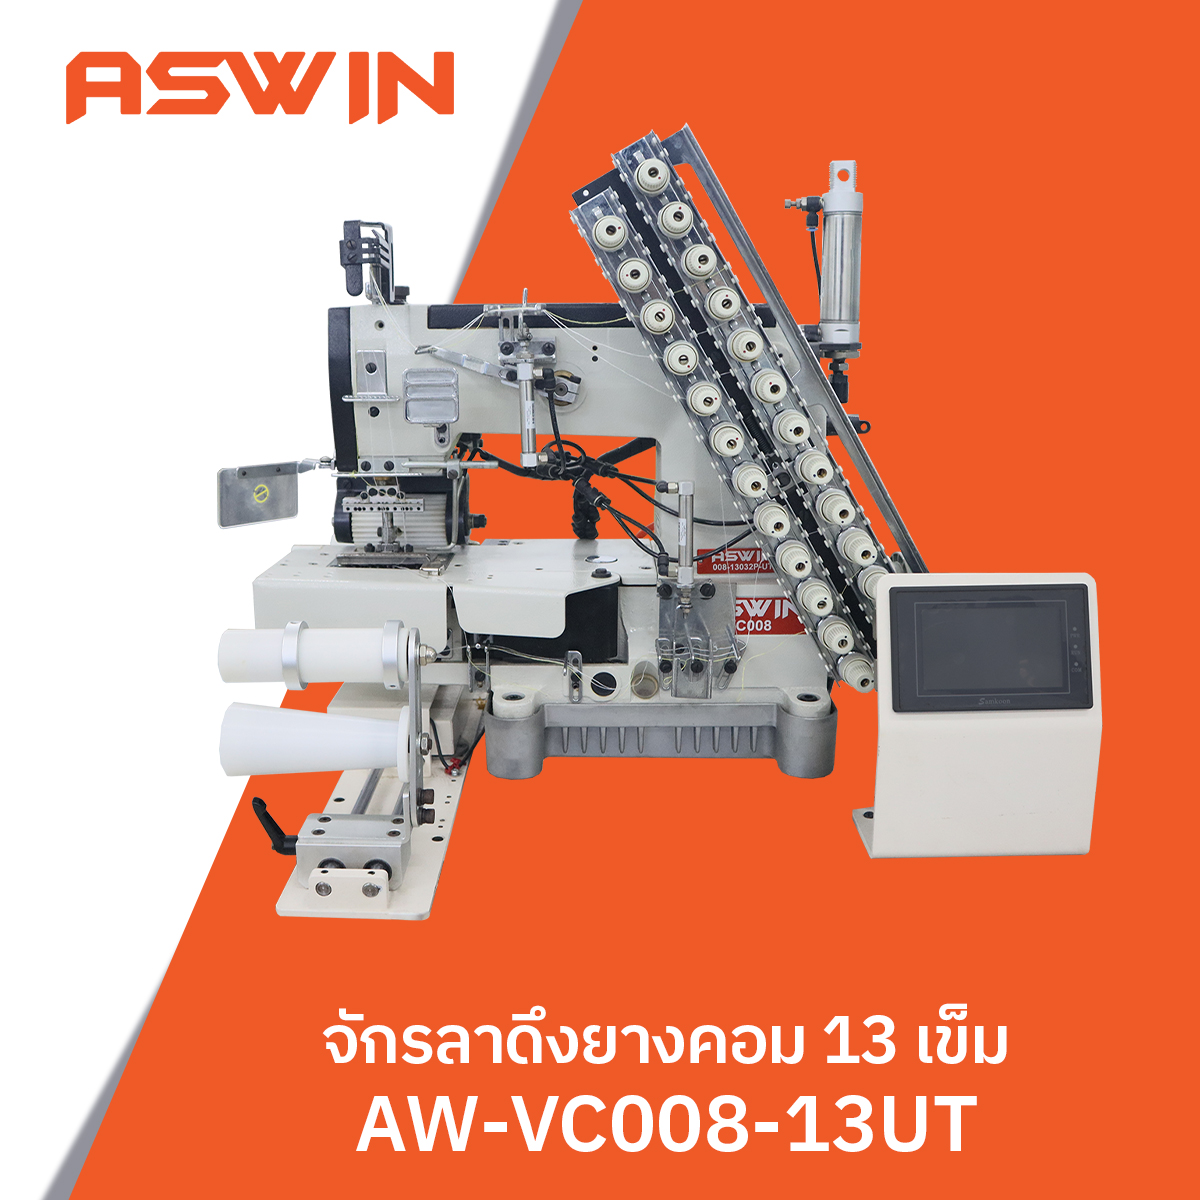 จักรลาดึงยางคอม 13 เข็ม ASWIN รุ่น AW-VC008-13UT